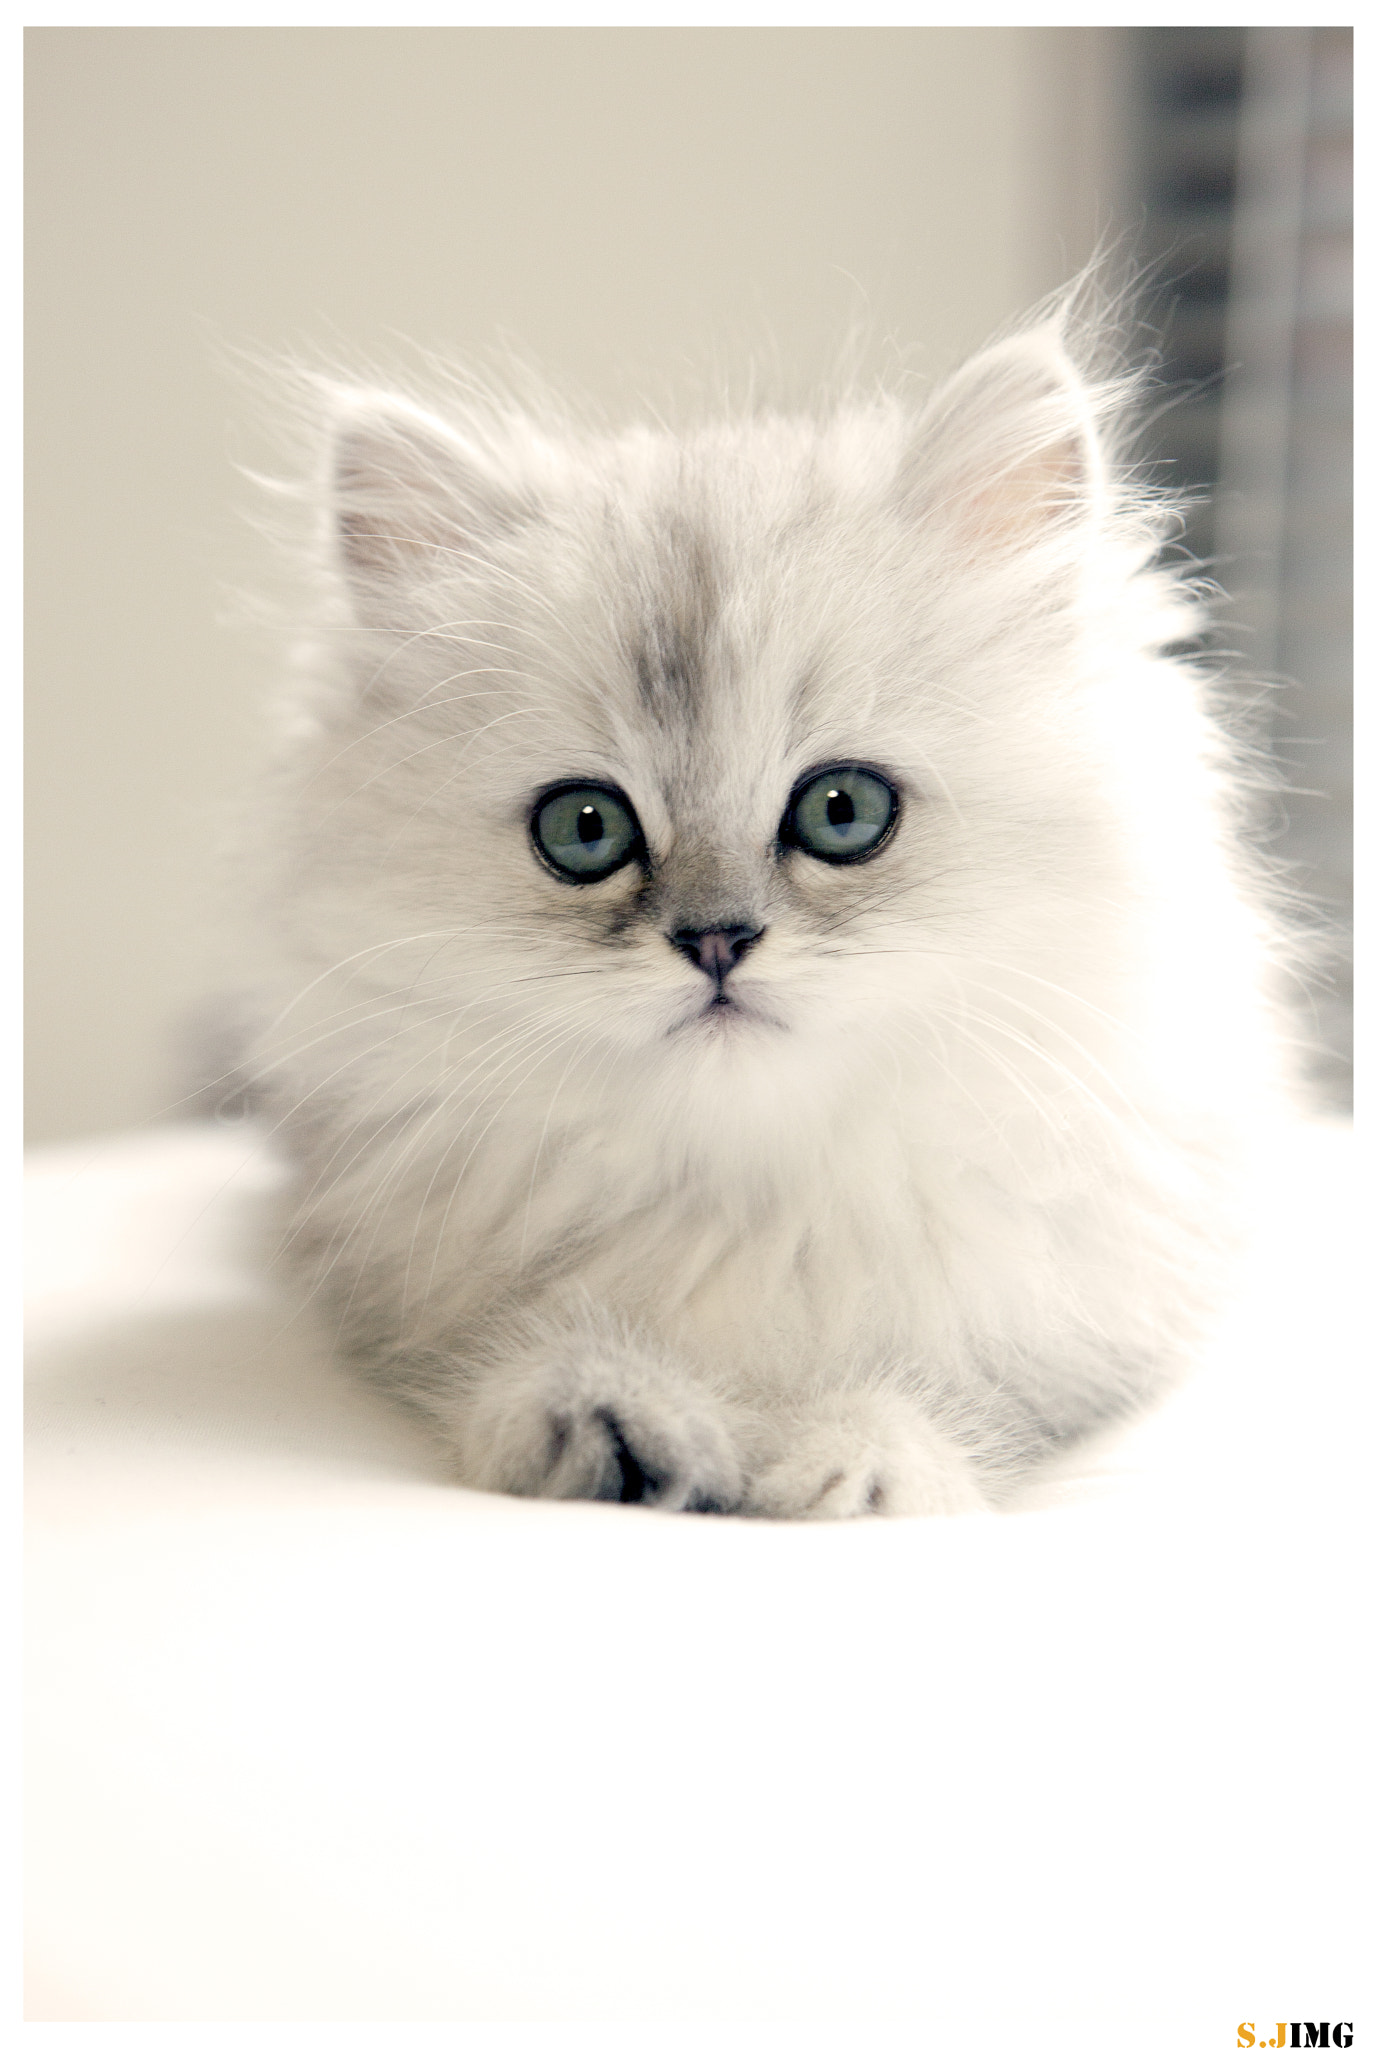 My Persian Cat by Jing Shen Photo 80248835 / 500px